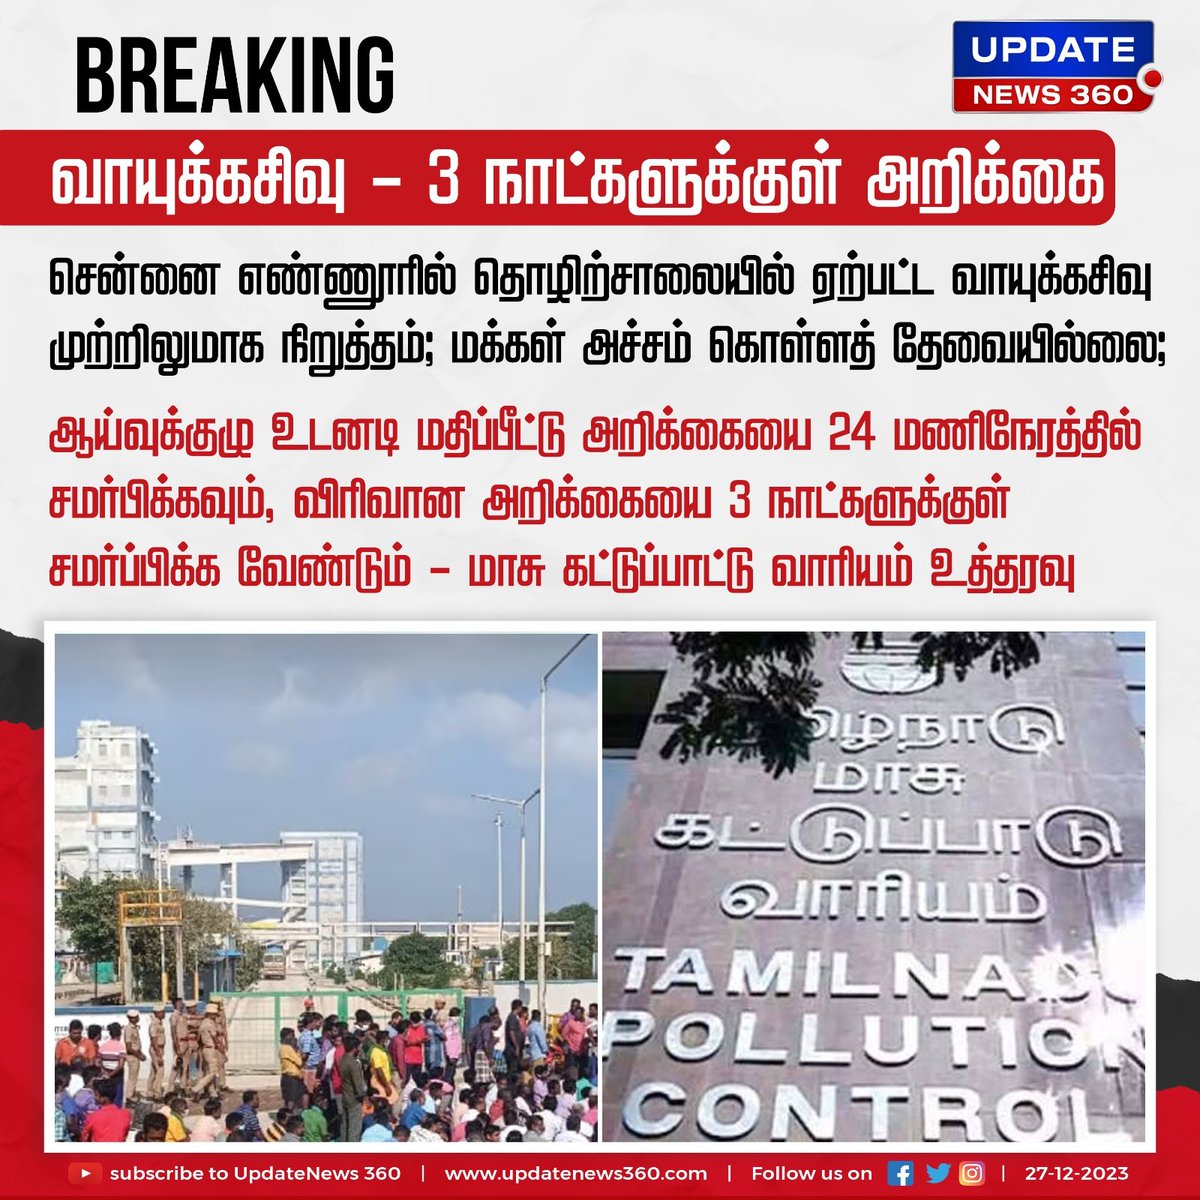 எண்ணூர் வாயுக்கசிவு சம்பவம் - 3 நாட்களுக்குள் அறிக்கை சமர்பிக்க உத்தரவு

#UpdateNews | #Ennore | #GasLeak | #SDPI | #Ennore | #GasLeak | #EnnoreGasLeak | #TNGovt | #TamilNaduPollutionControlBoard | #TamilNews | #UpdateNews360